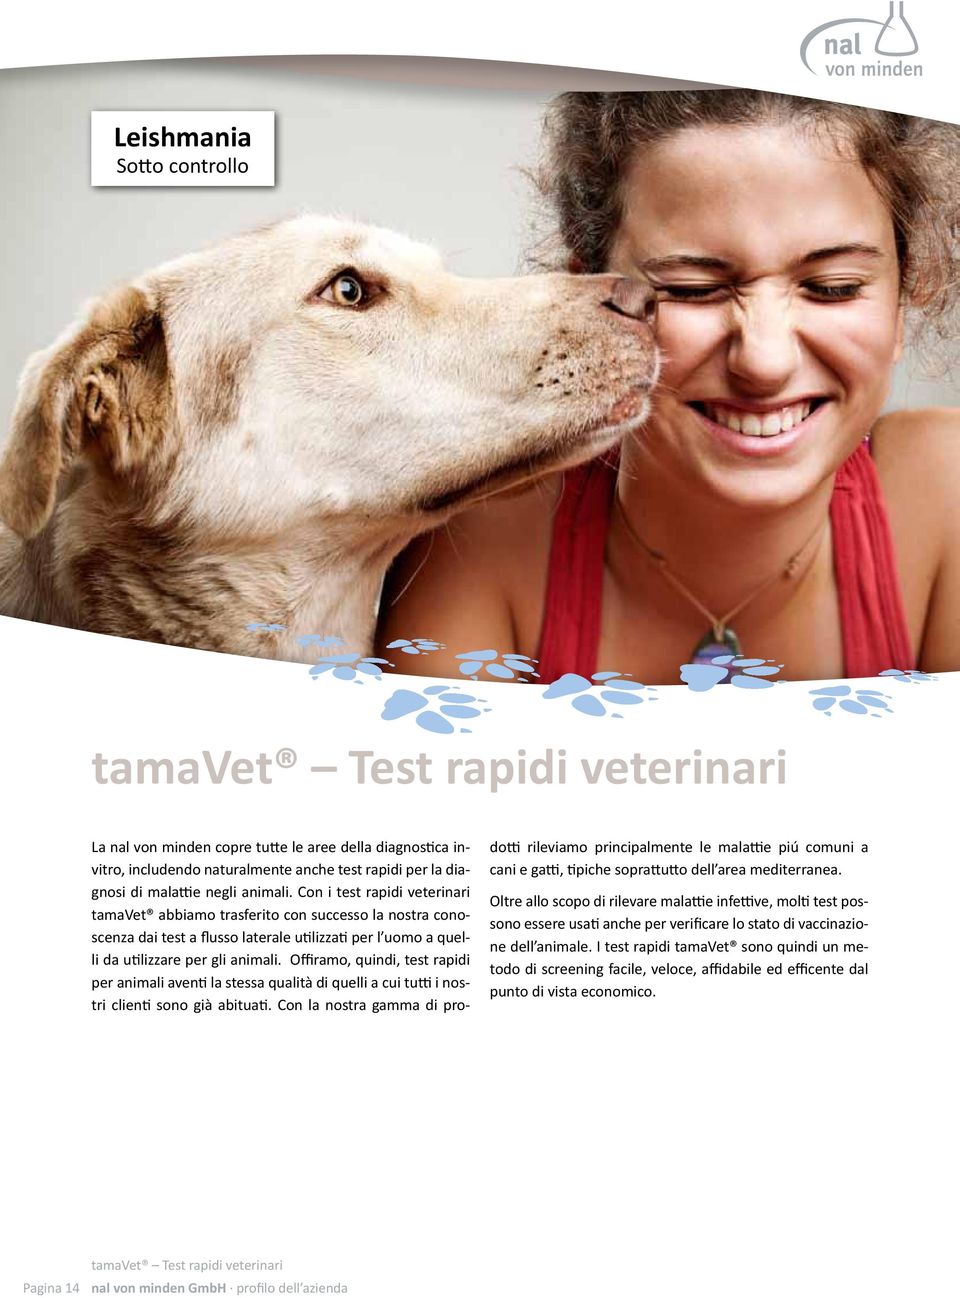 Offiramo, quindi, test rapidi per animali aventi la stessa qualità di quelli a cui tutti i nostri clienti sono già abituati.